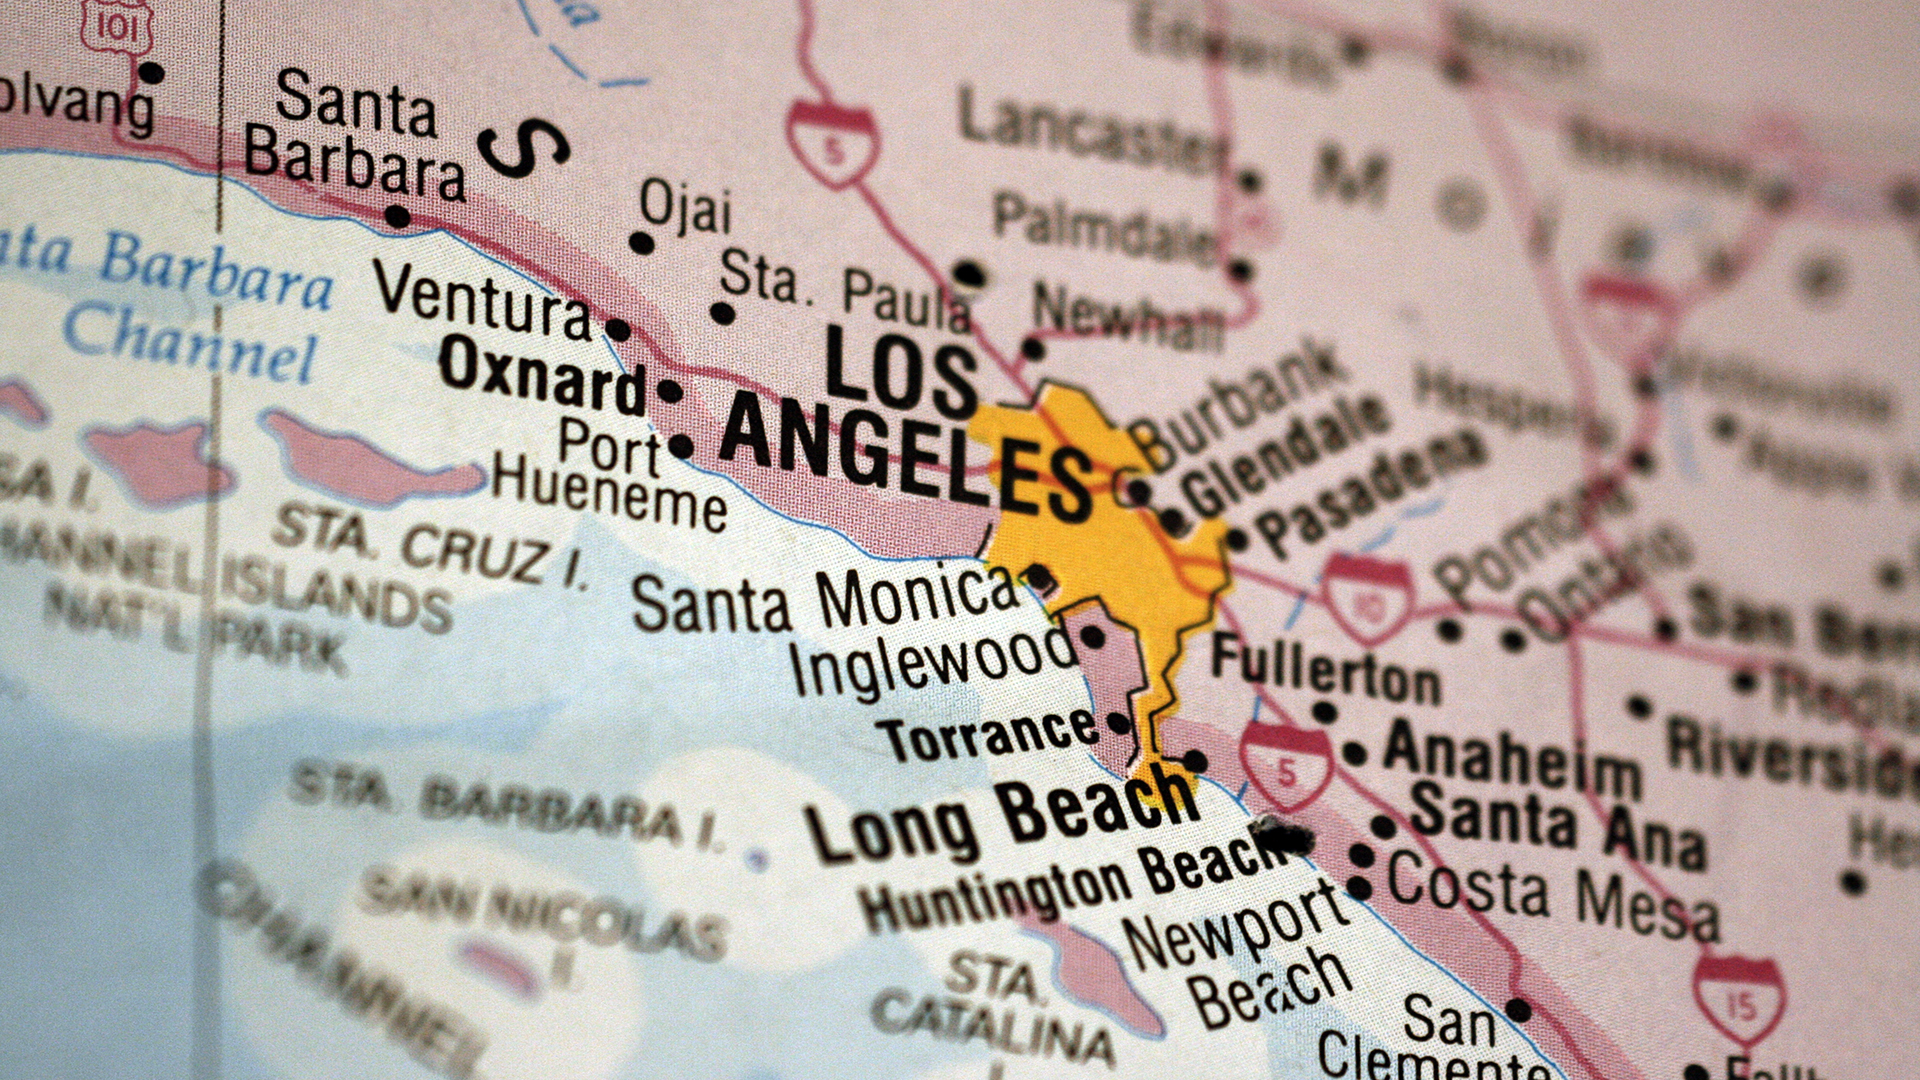 បដារូបភាពផែនទីបង្ហាញទីតាំងខោនធី Los Angeles County ដែលគូសបញ្ជាក់ពីទីក្រុង Los Angeles និងទីតាំងដែលនៅជំវិញទីក្រុង។